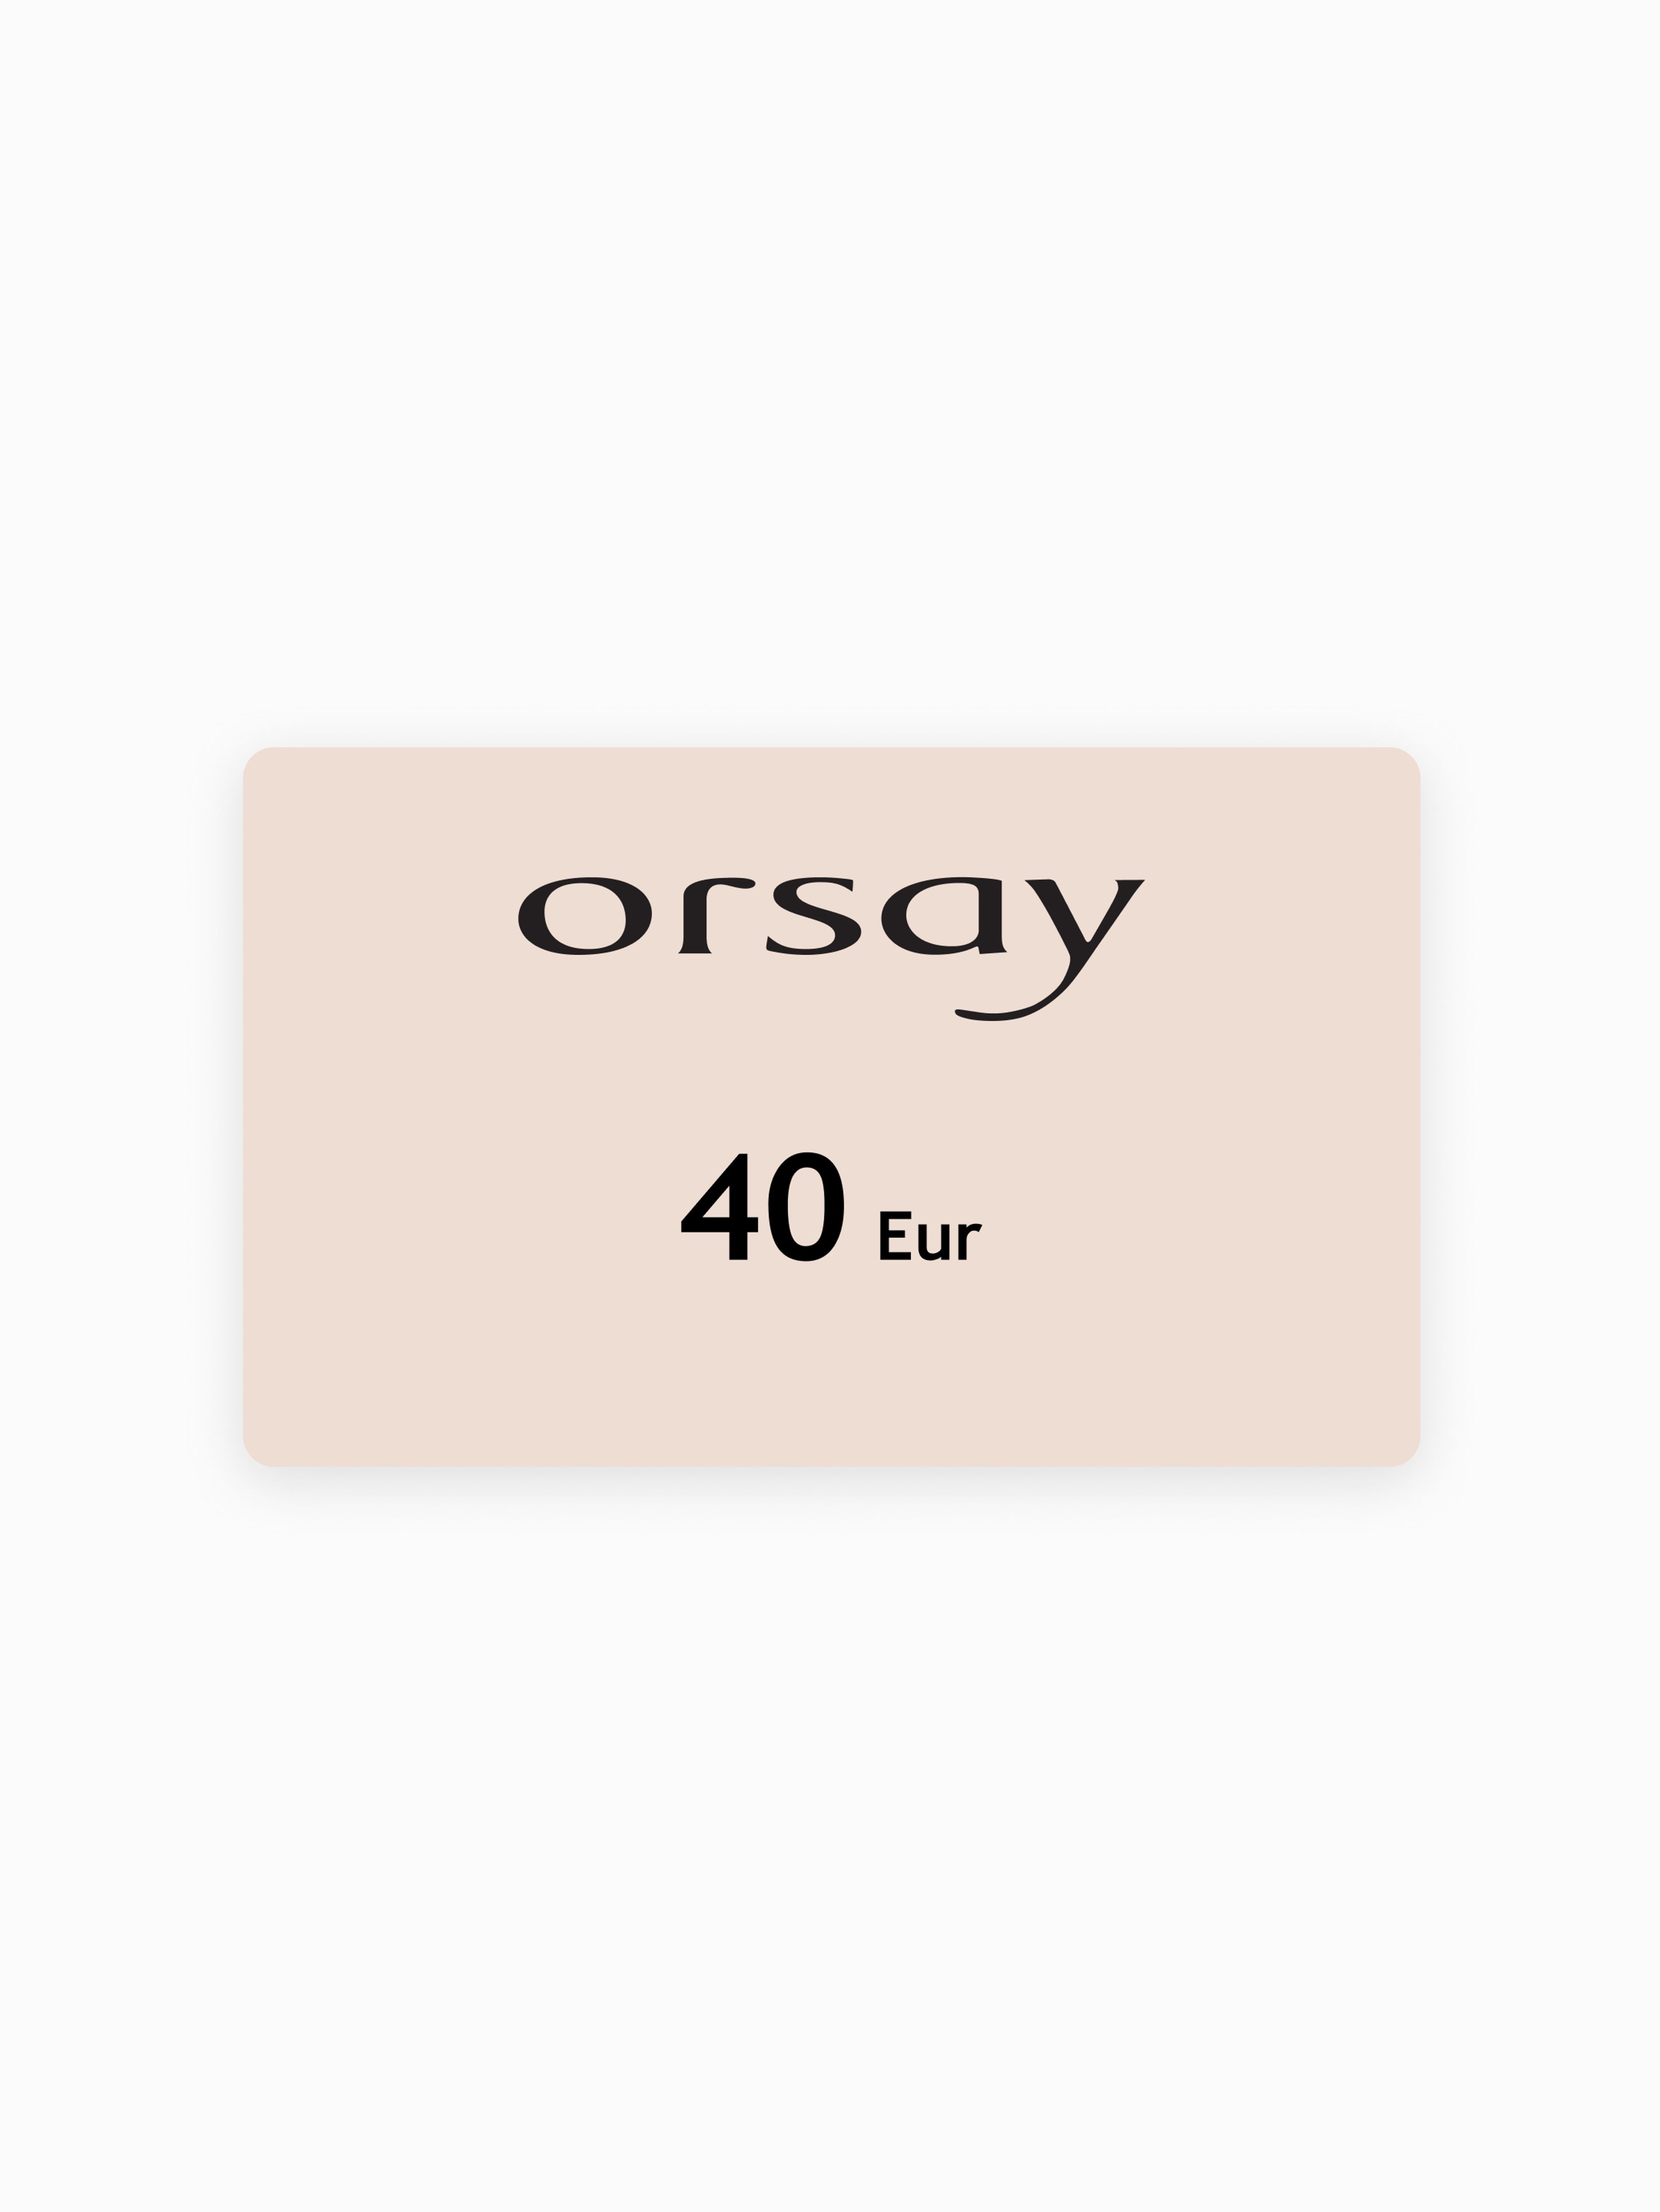 Elektronički bon ORSAY u vrijednosti 40 EUR